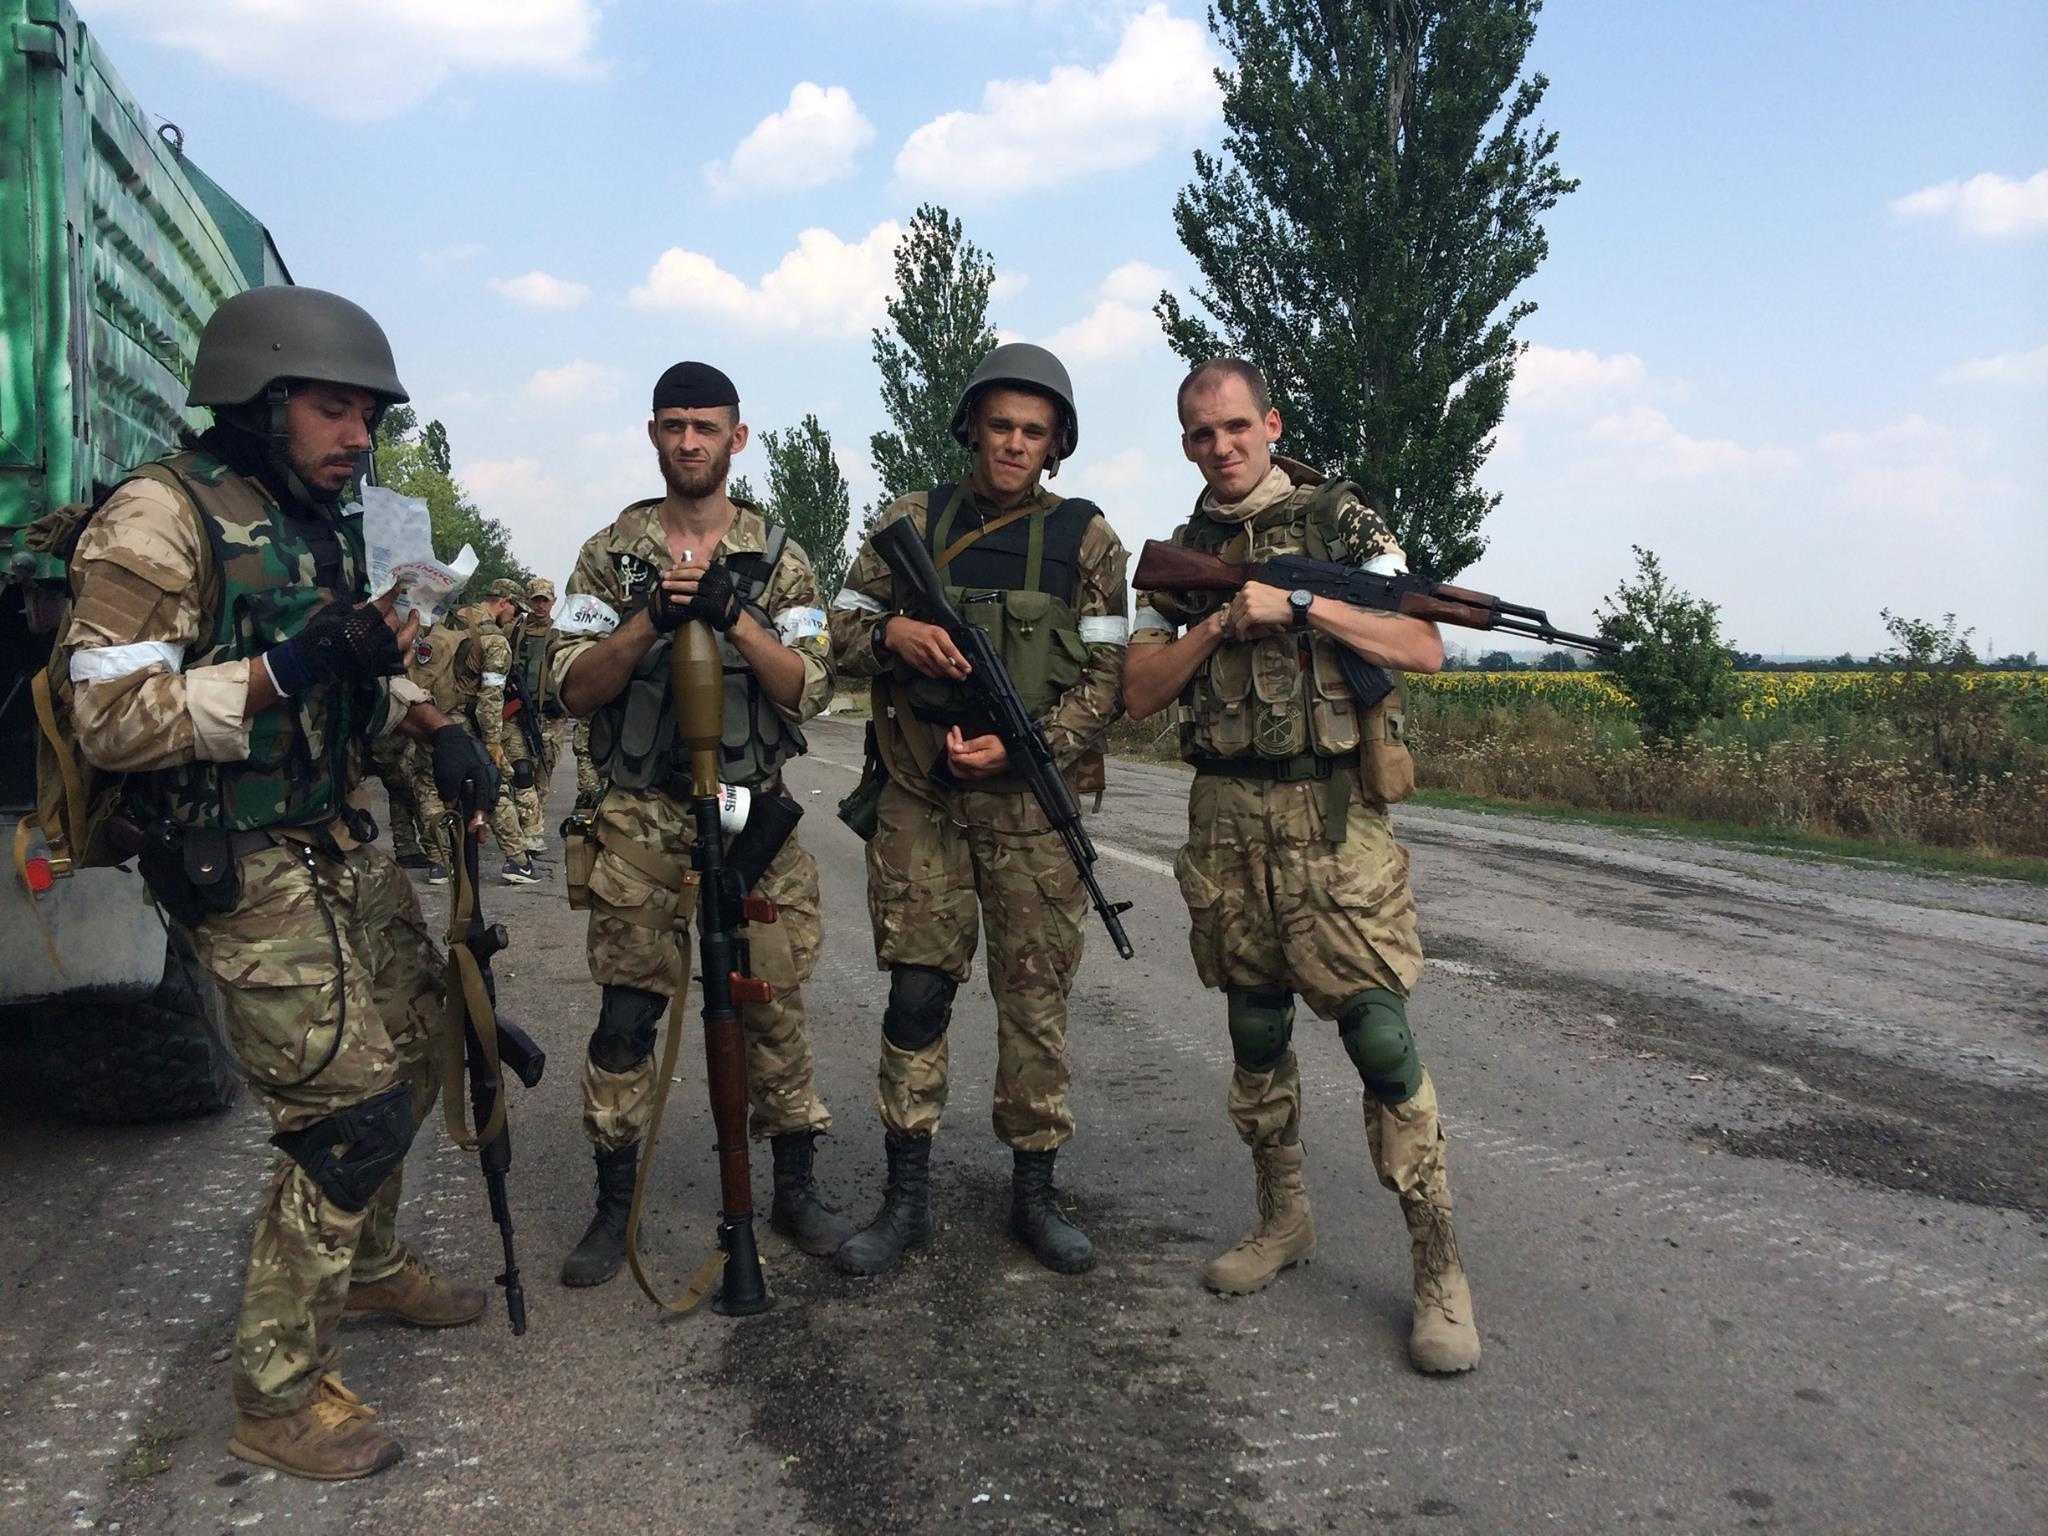 Середюк и его сослуживцы в Донбассе, 2014 год. Фото © VK / Підслухано Лубни